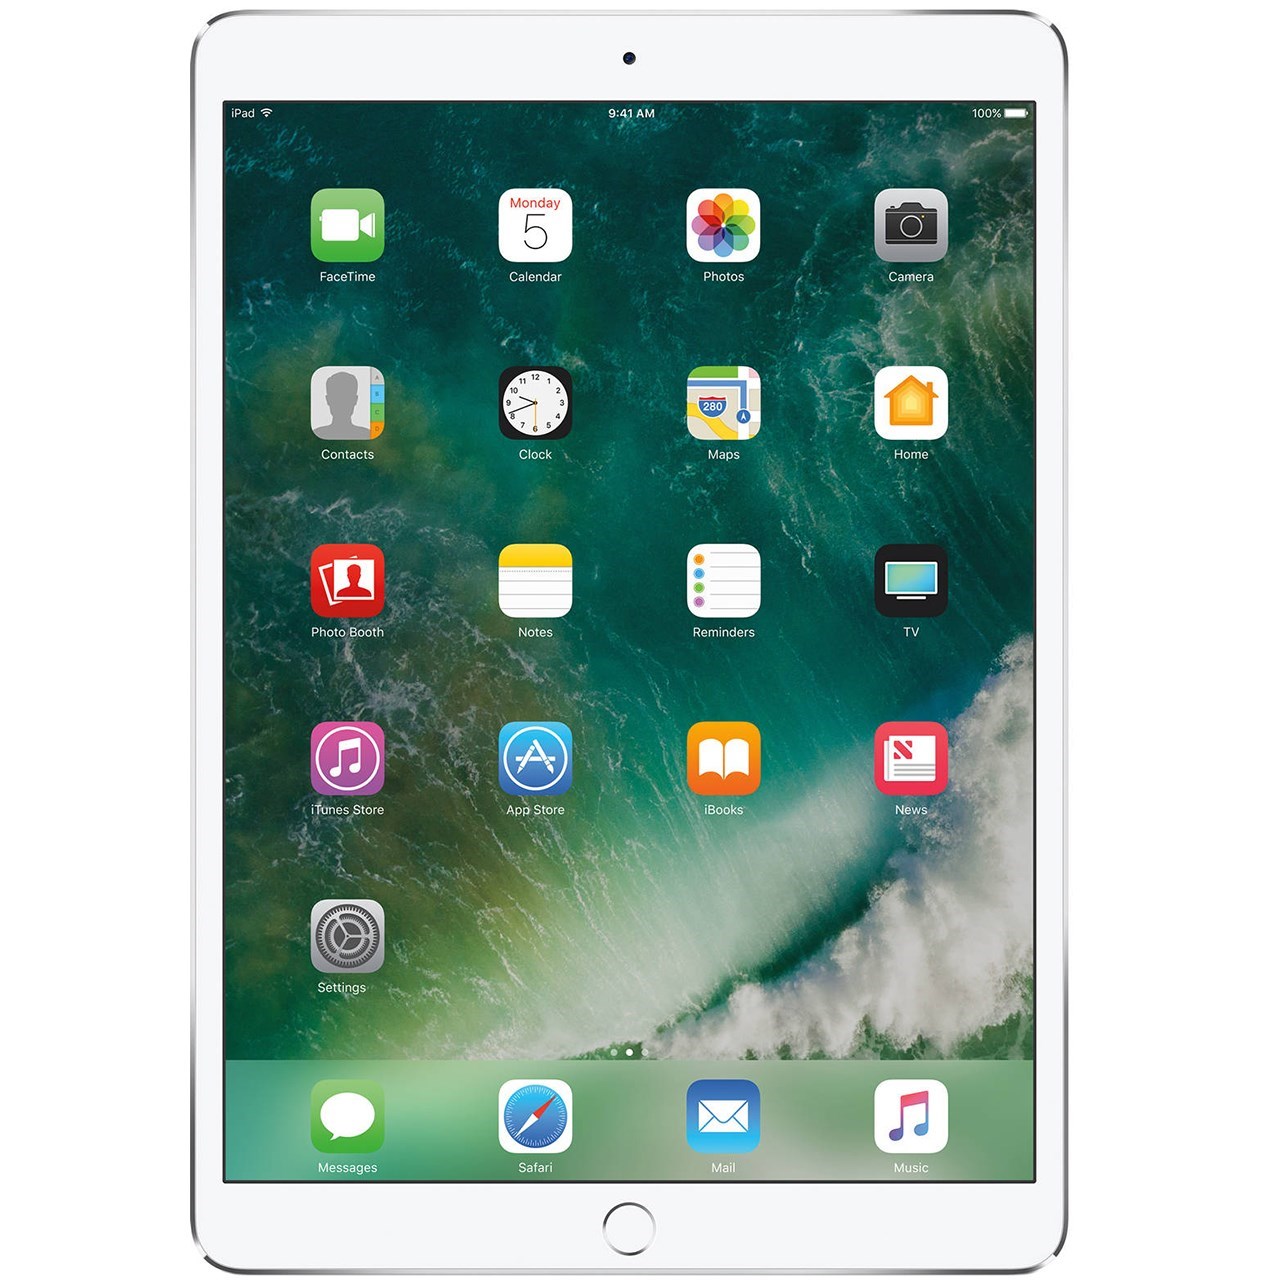 تبلت اپل مدل iPad Pro 10.5 inch WiFi ظرفیت 256 گیگابایت